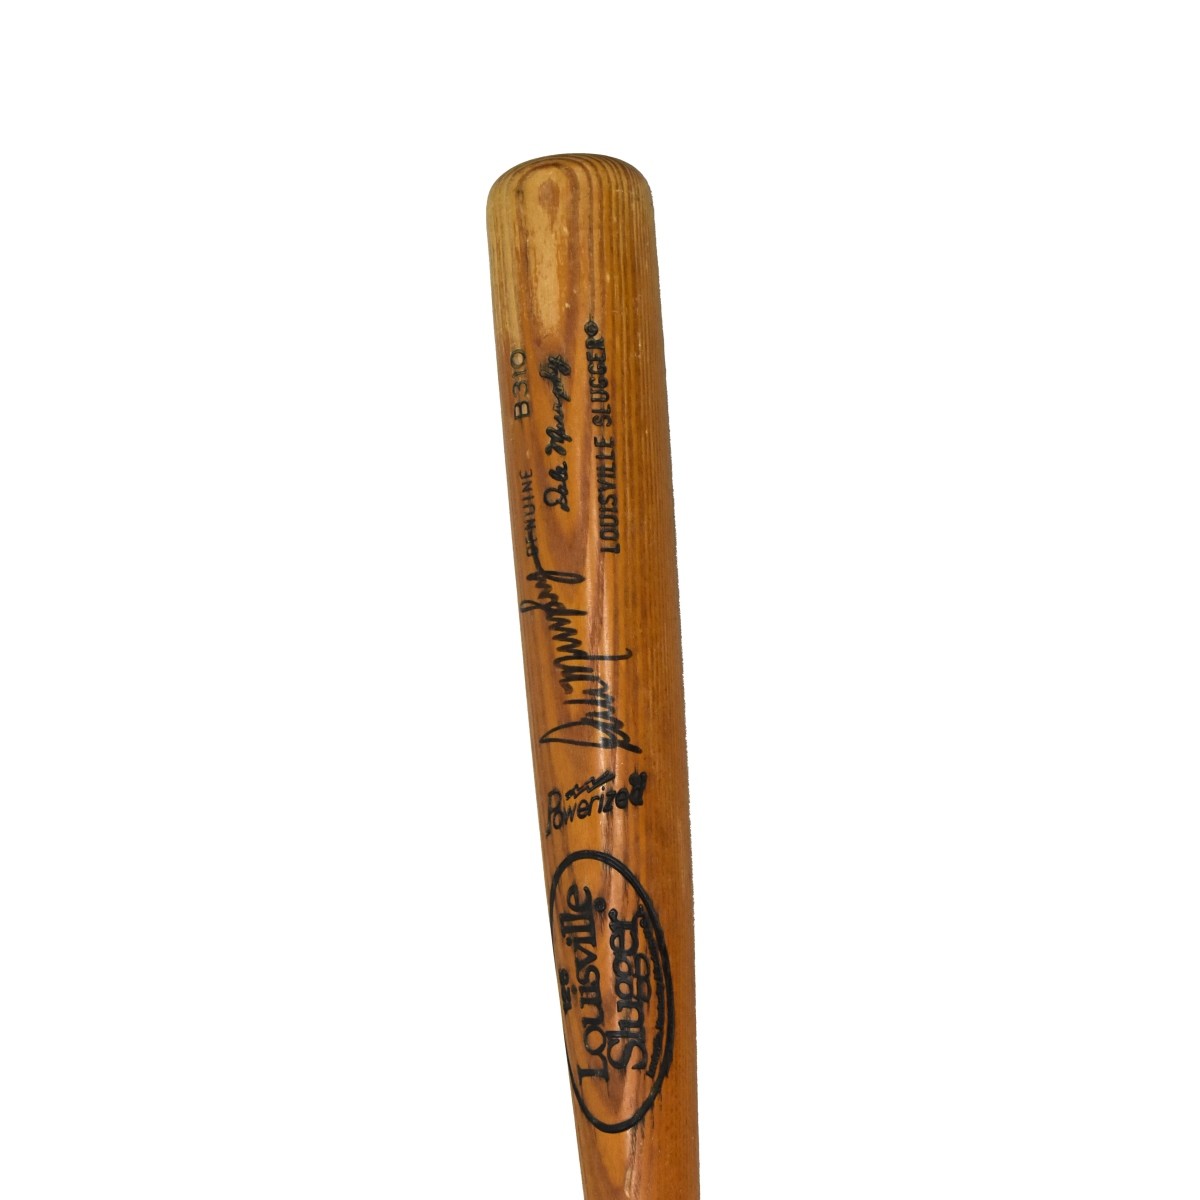 4 Louisville Slugger Baseball Bats